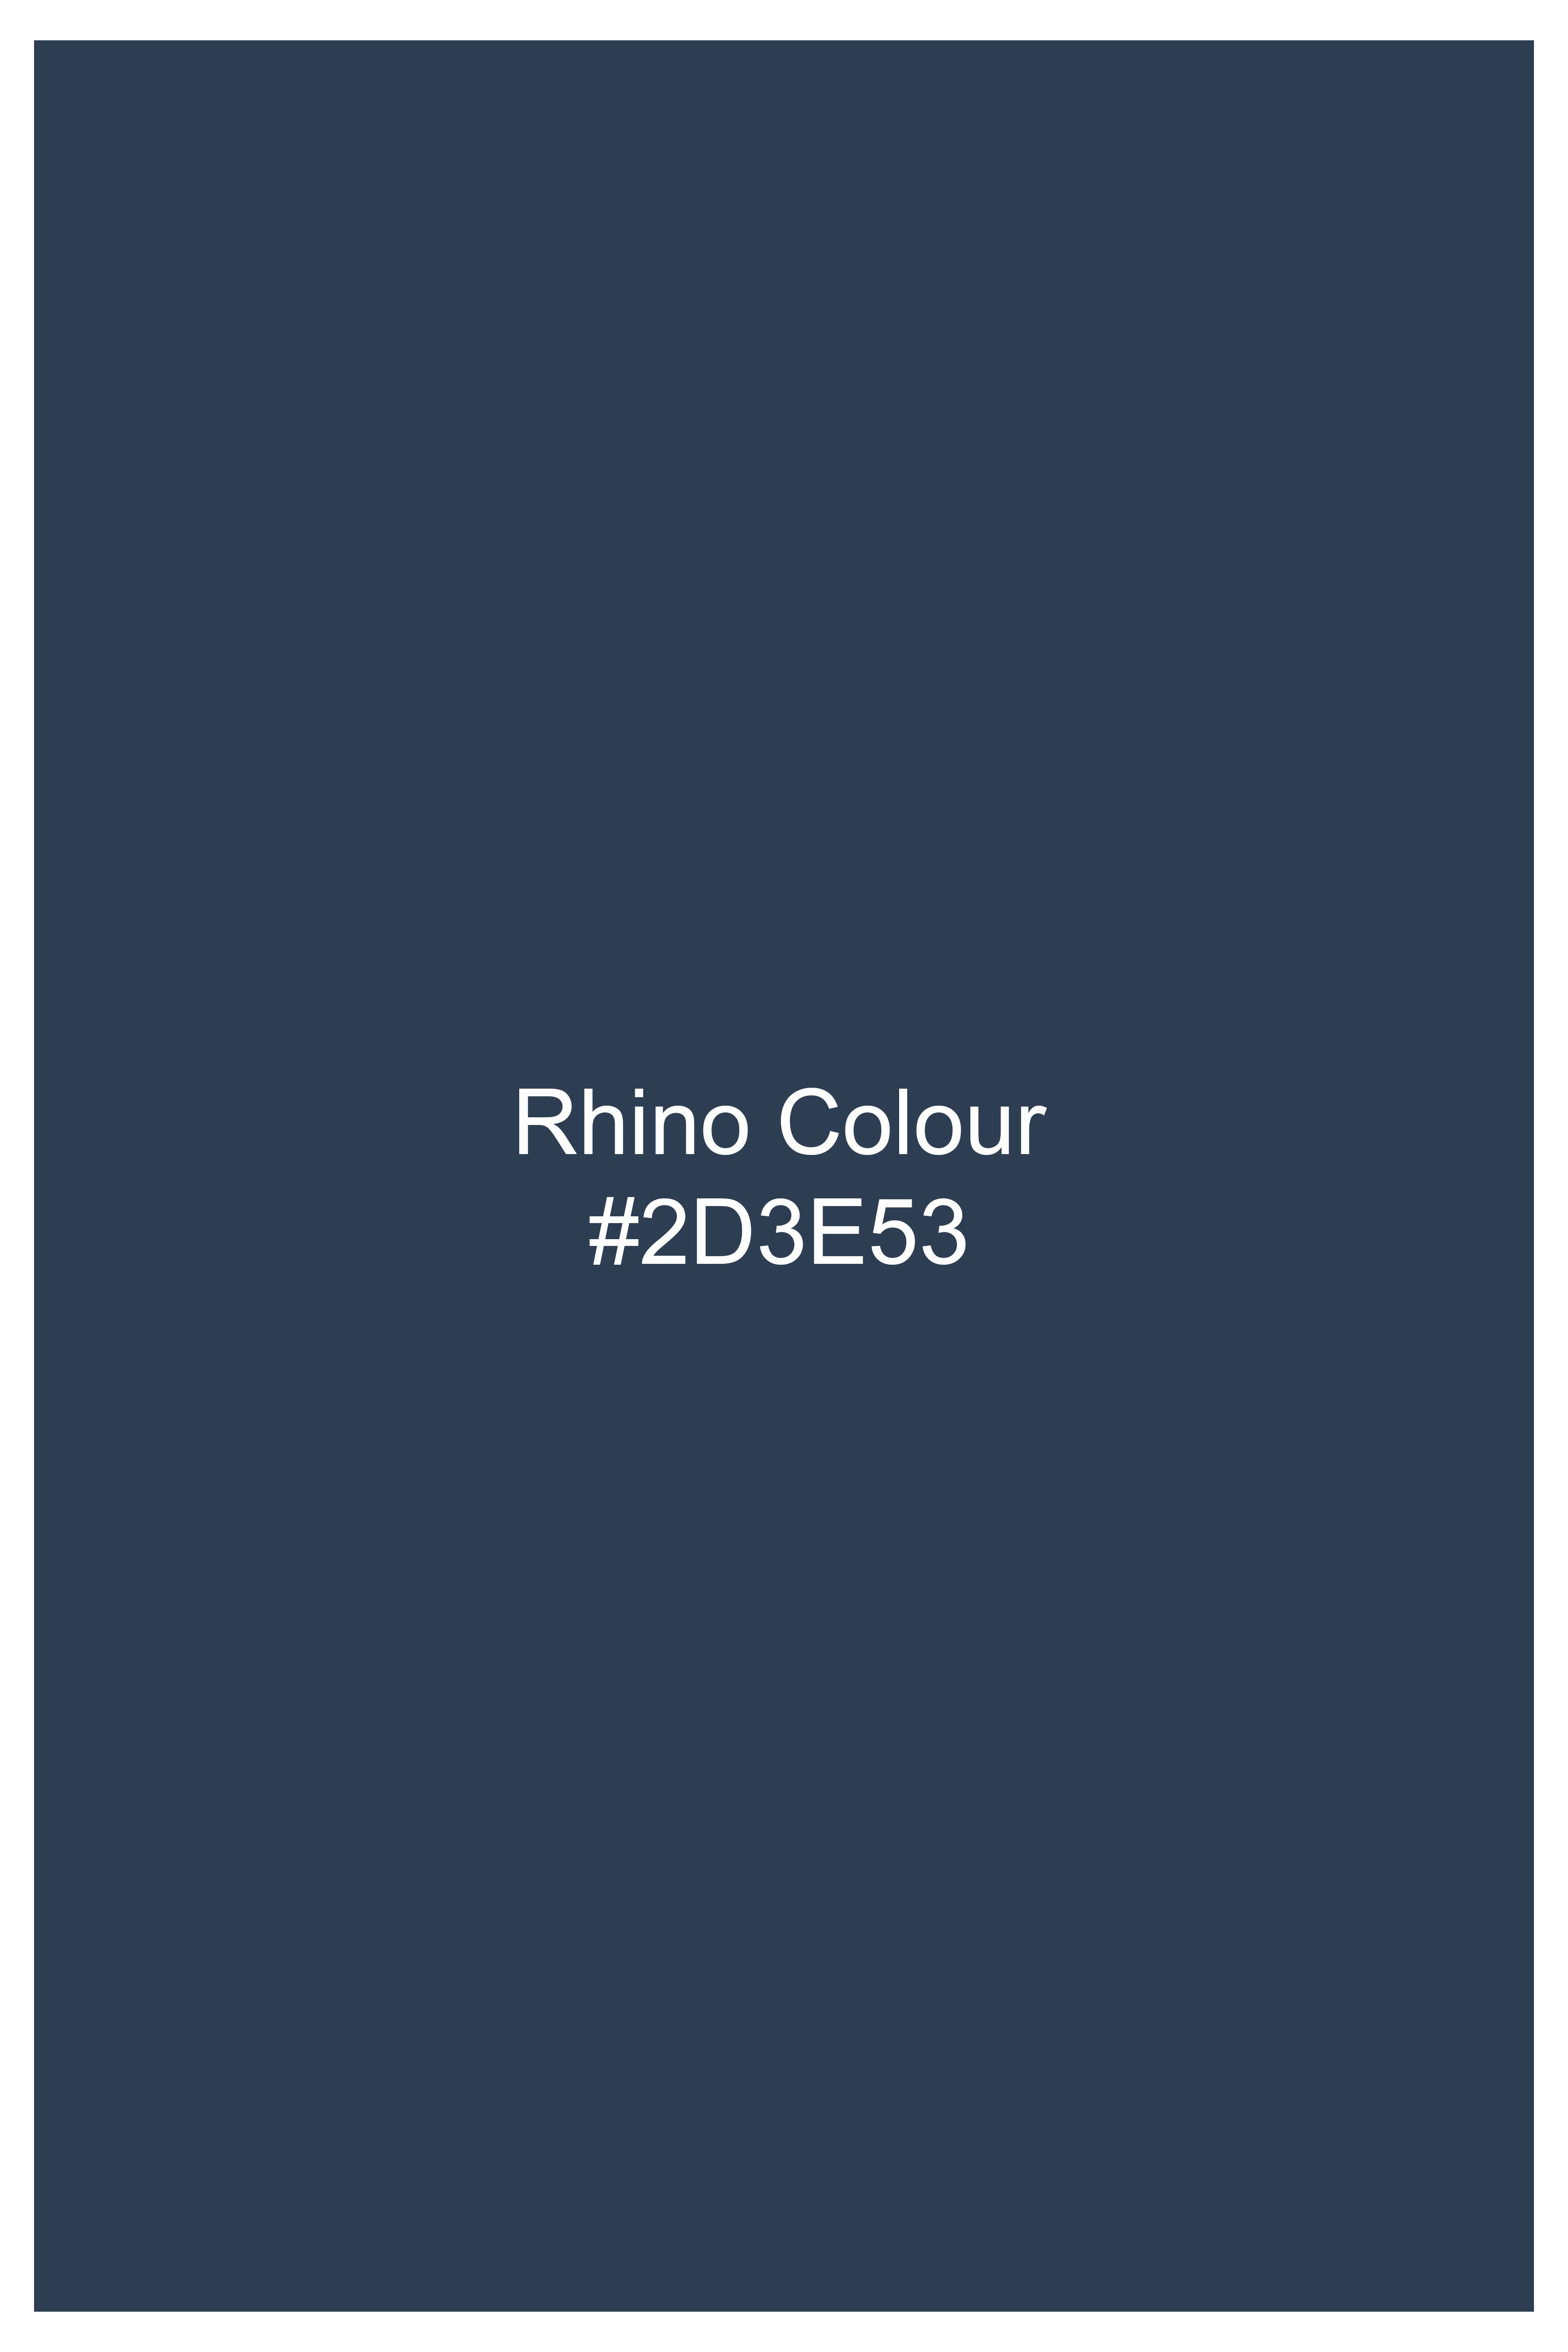 Rhino Blue Rinse Wash Clean Look Stretchable Chinos J259-30, J259-32, J259-34, J259-36, J259-38, J259-40